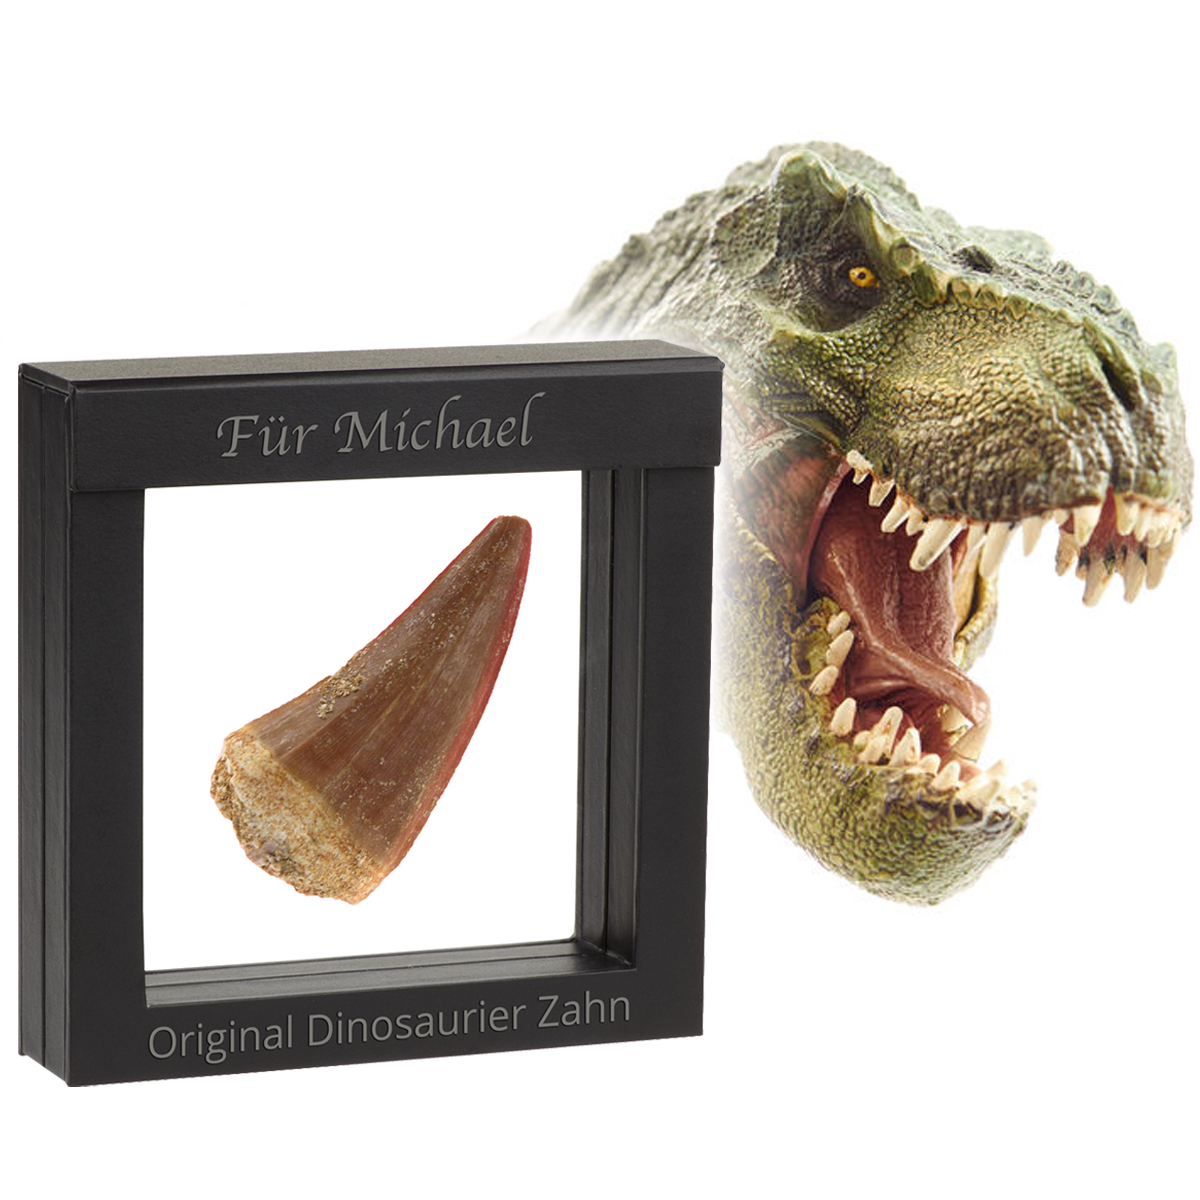 Original Dinosaurier-Zahn im Schweberahmen